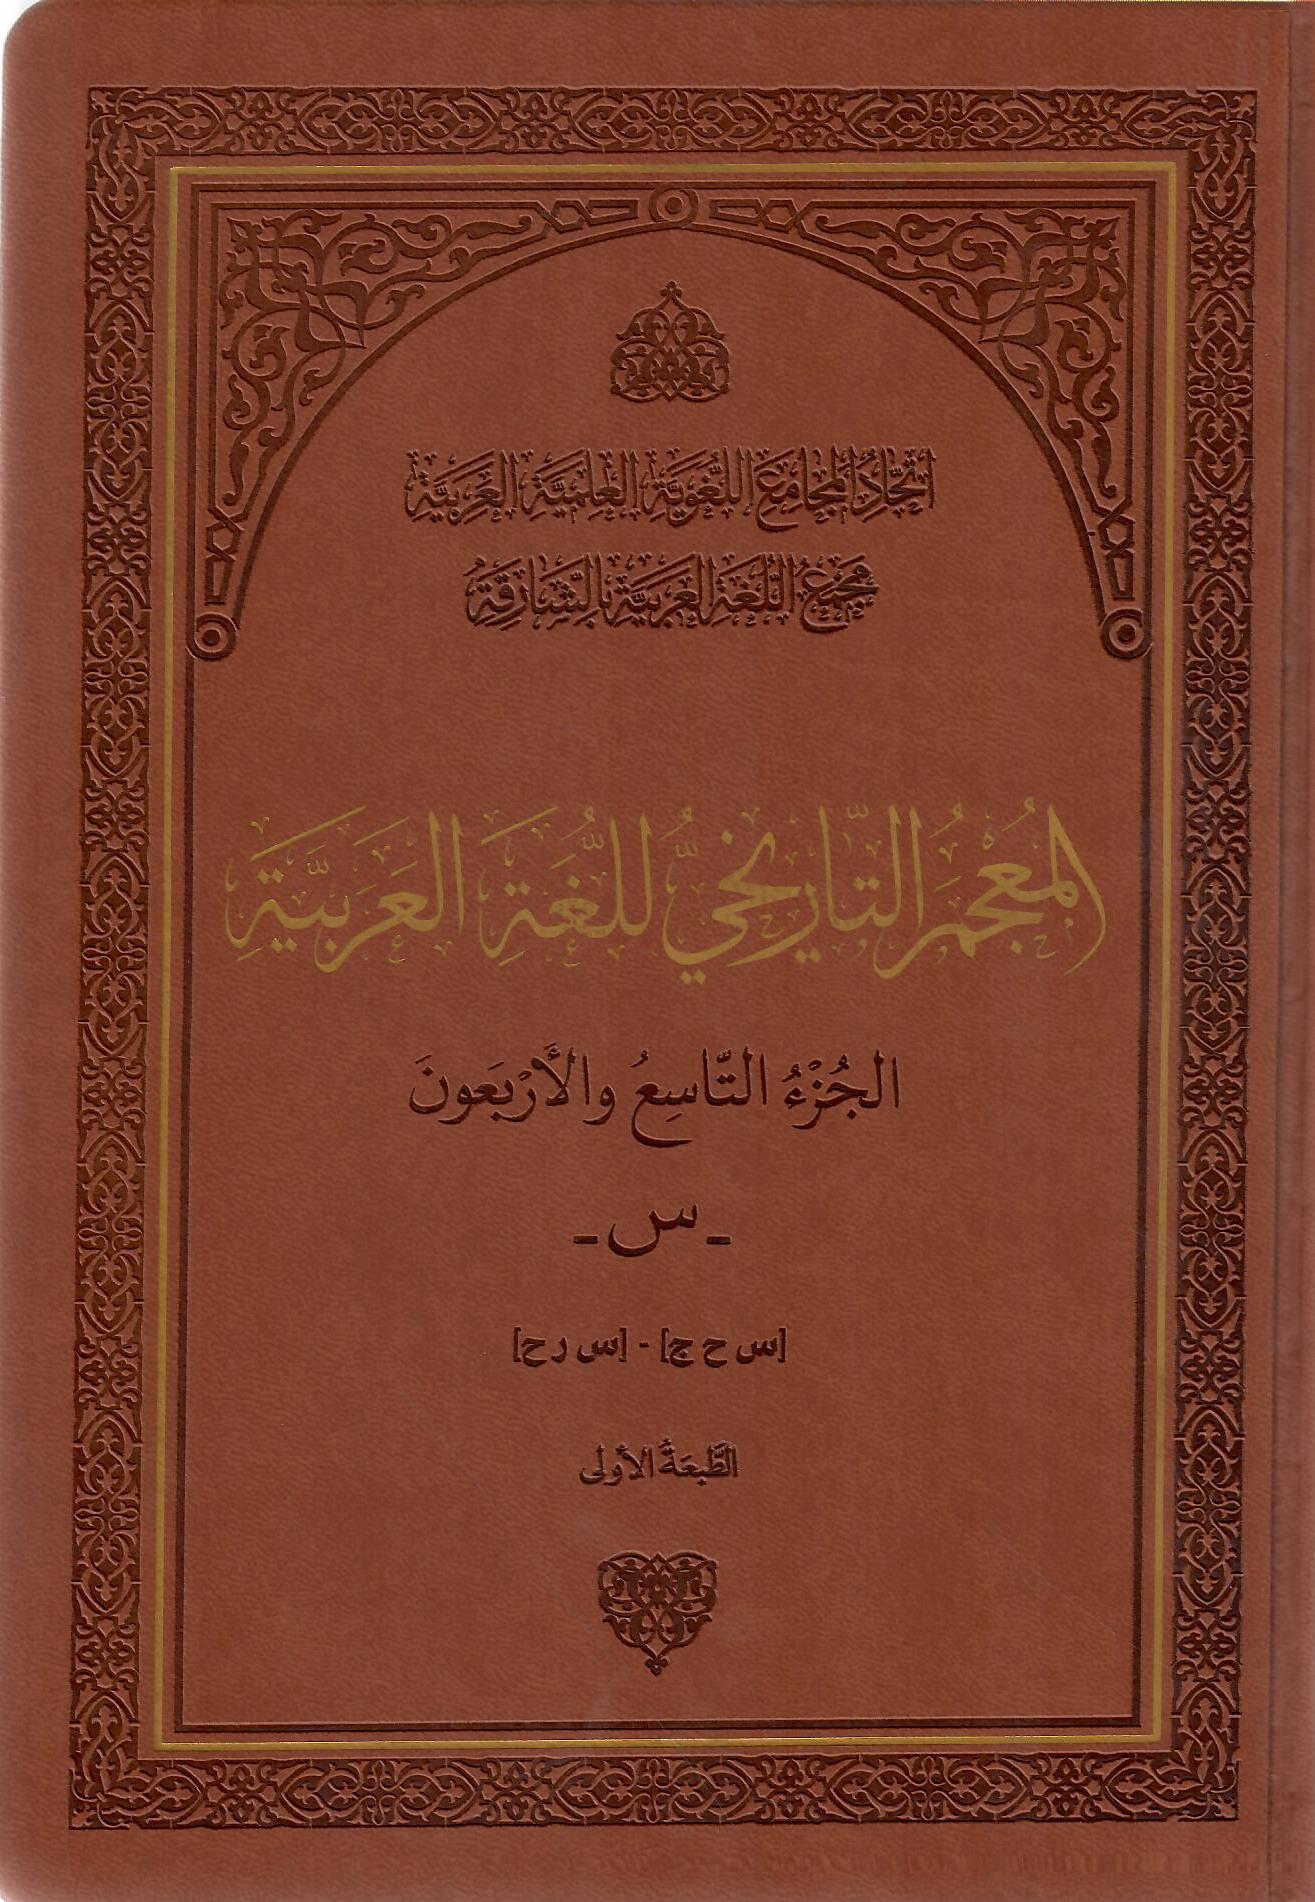 المعجم التاريخي للغة العربية التاسع والأربعون